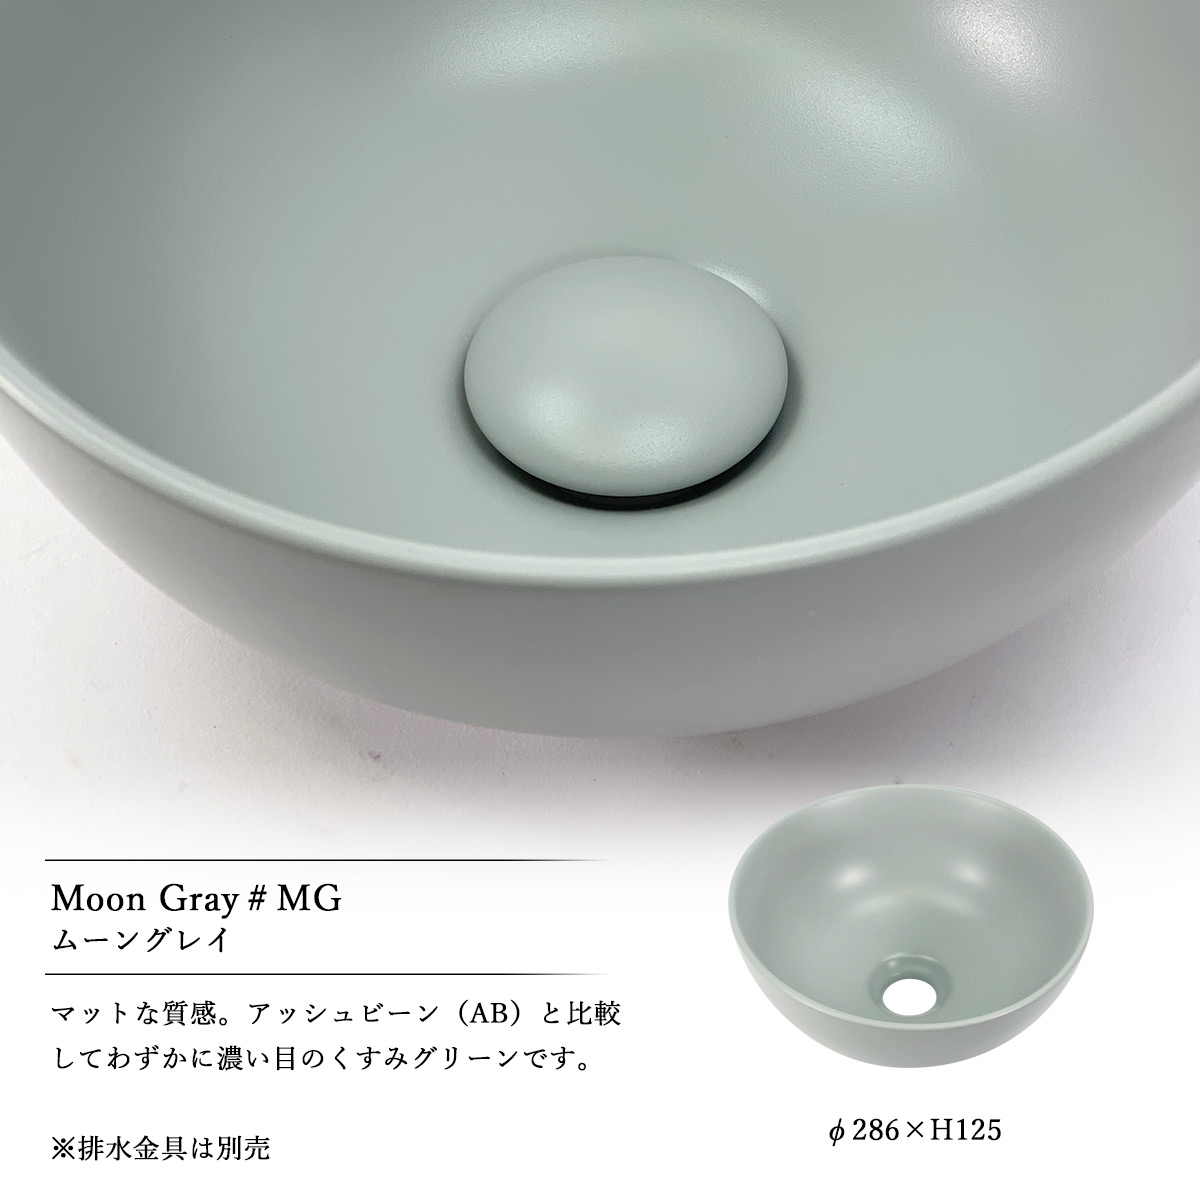 上置き型の円形手洗器（ムーングレイ）